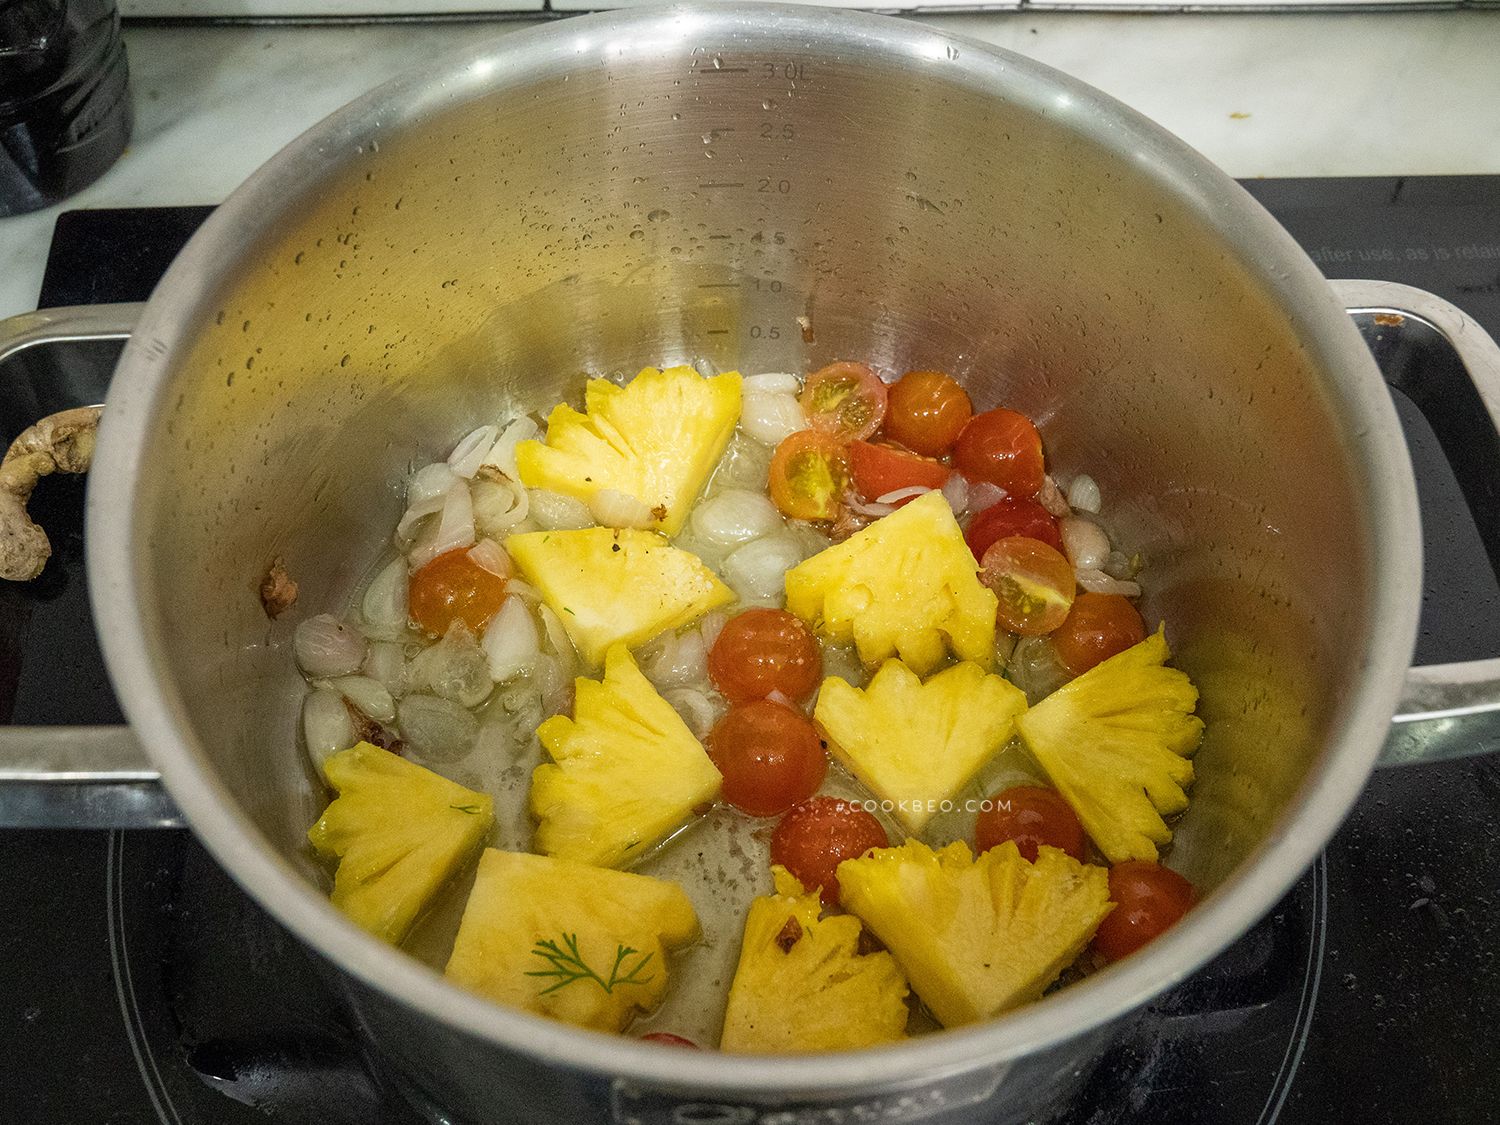 Cách nấu canh mực nấu dứa chua cay nịnh miệng, đưa cơm, rất hợp ngày lạnh - Ảnh 4